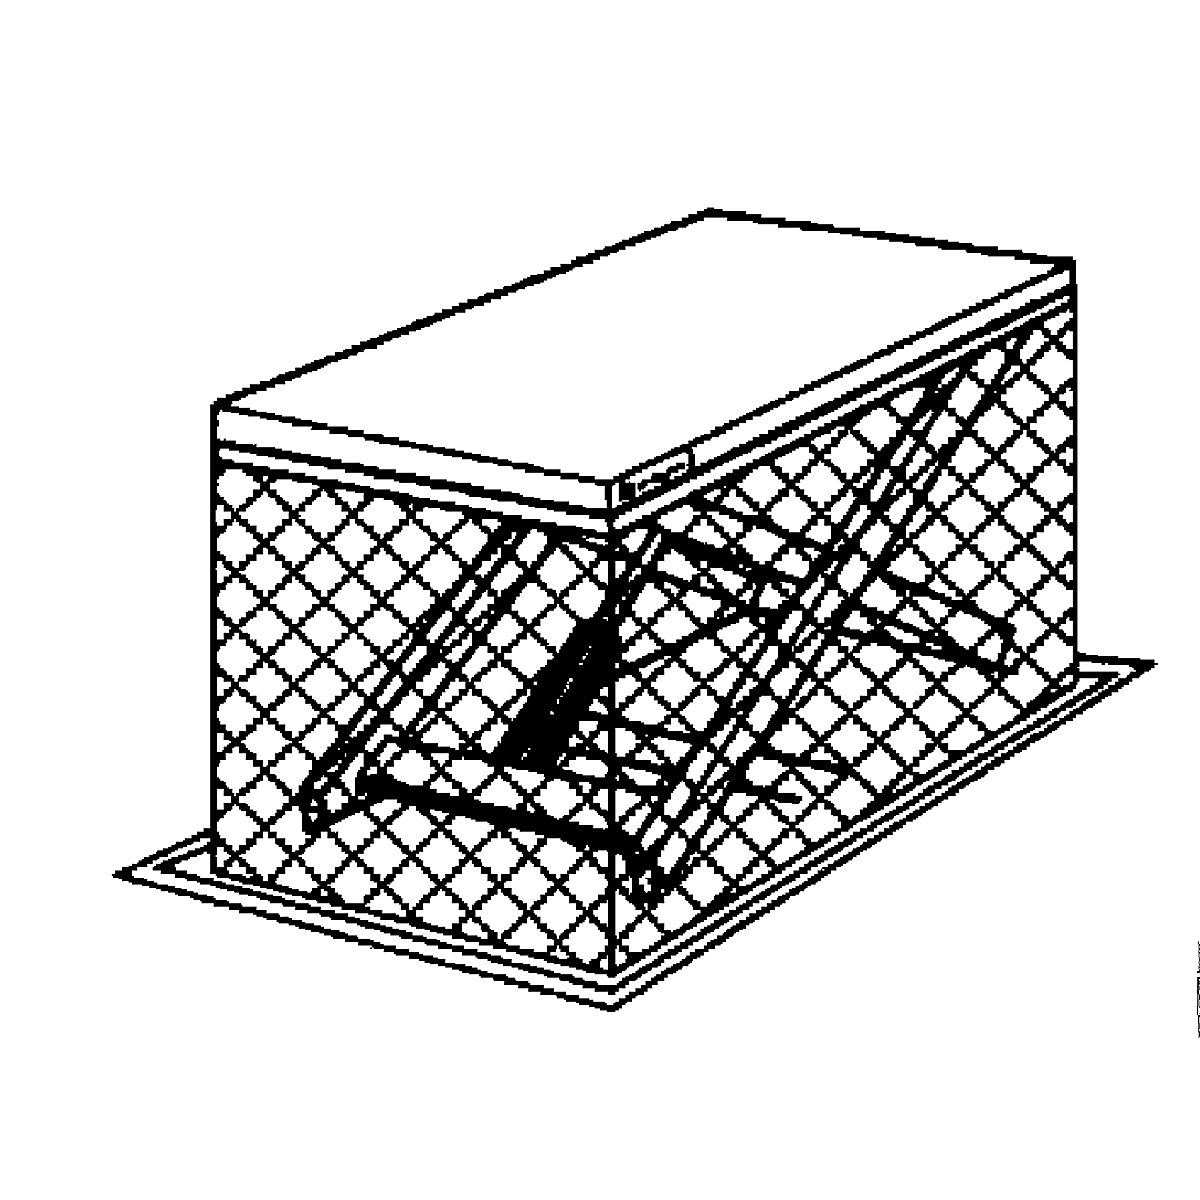 Edmolift – Platformă de ridicare compactă (Imagine produs 4)